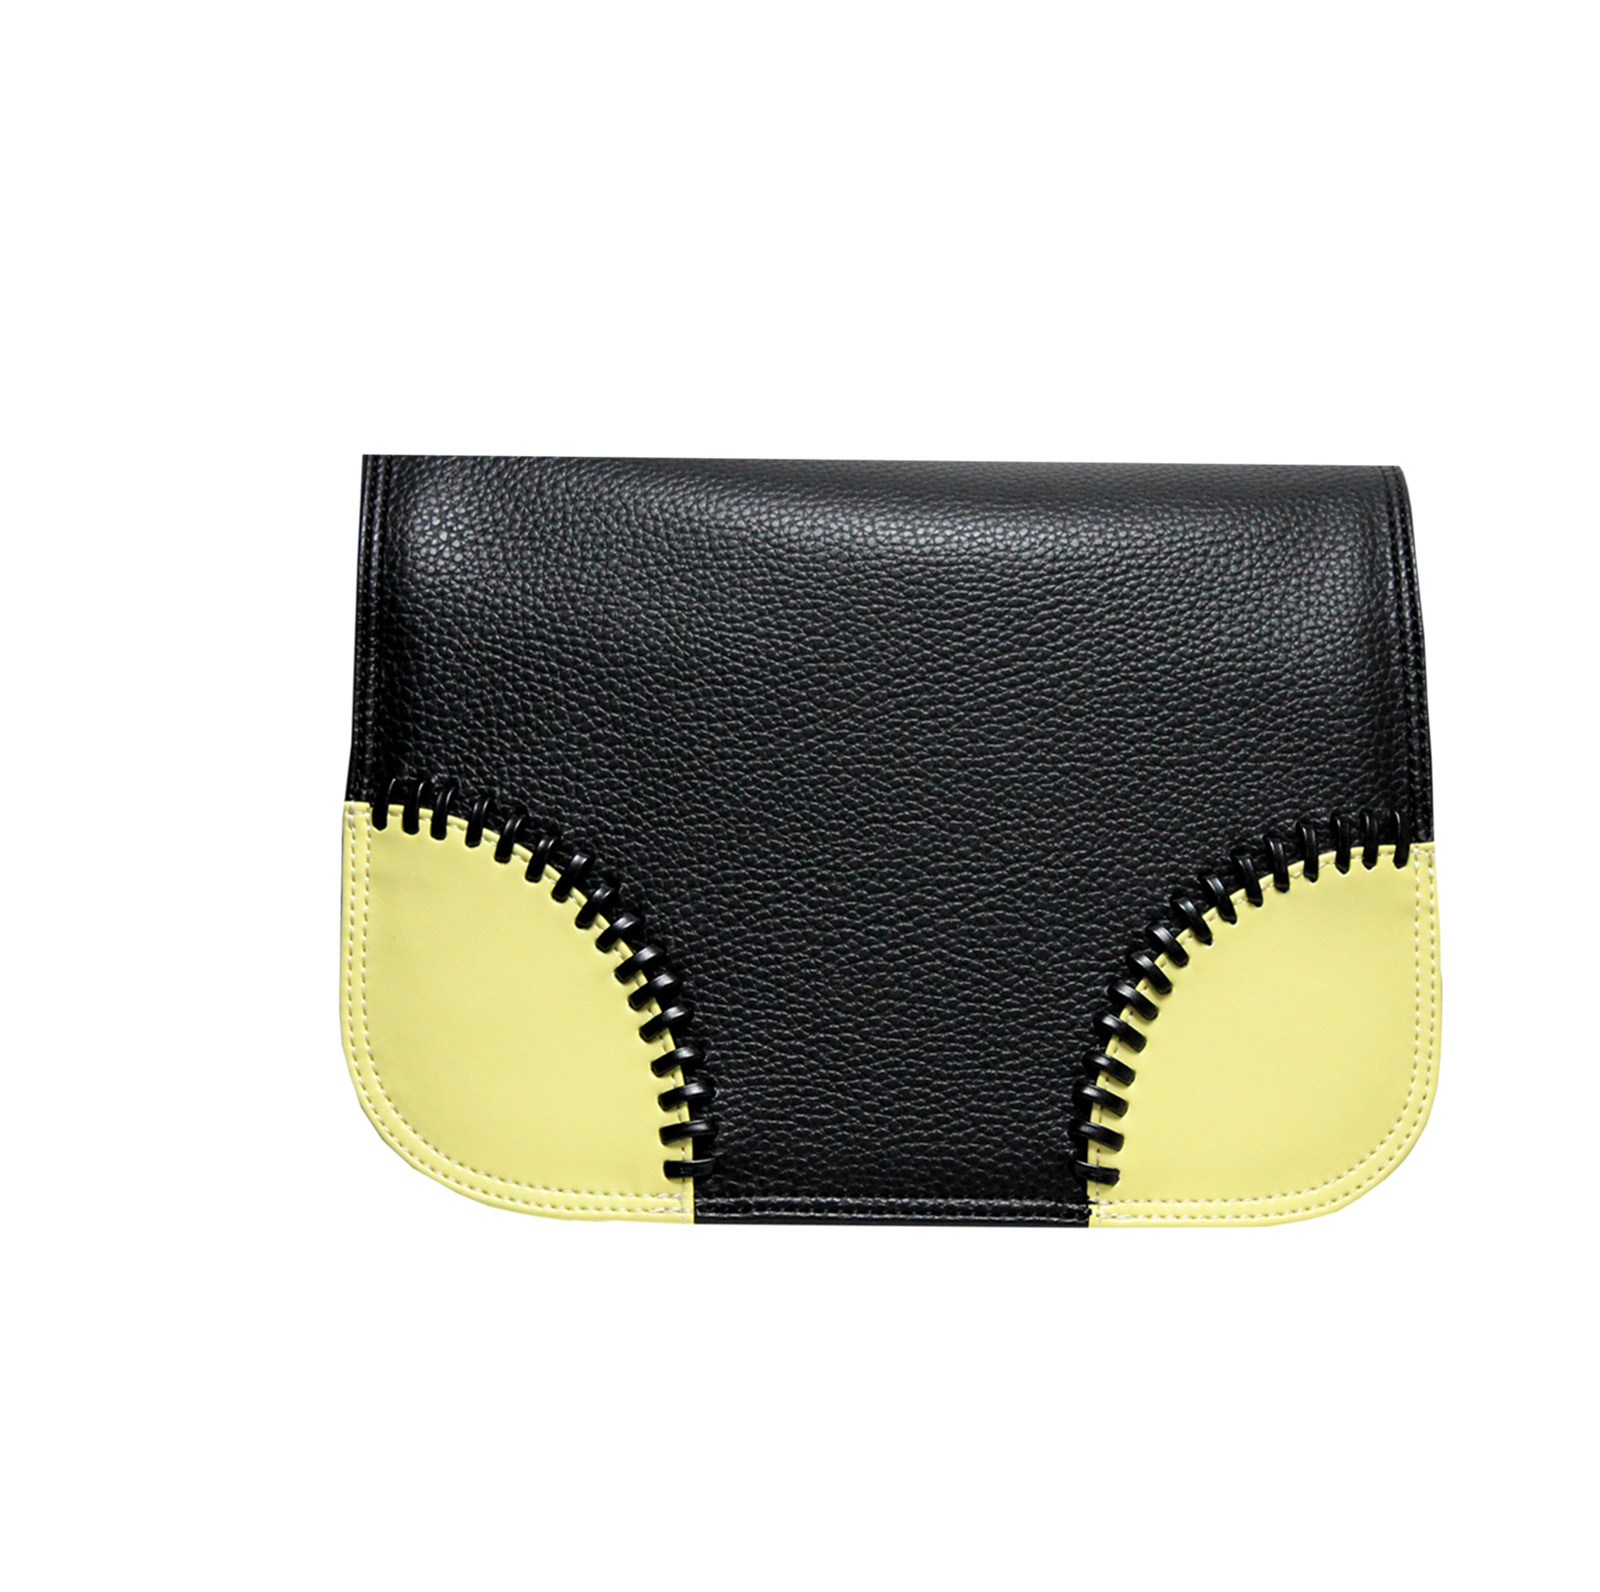 schwarzes Design mit gelben Ecken für die Handtasche von Delieta soft